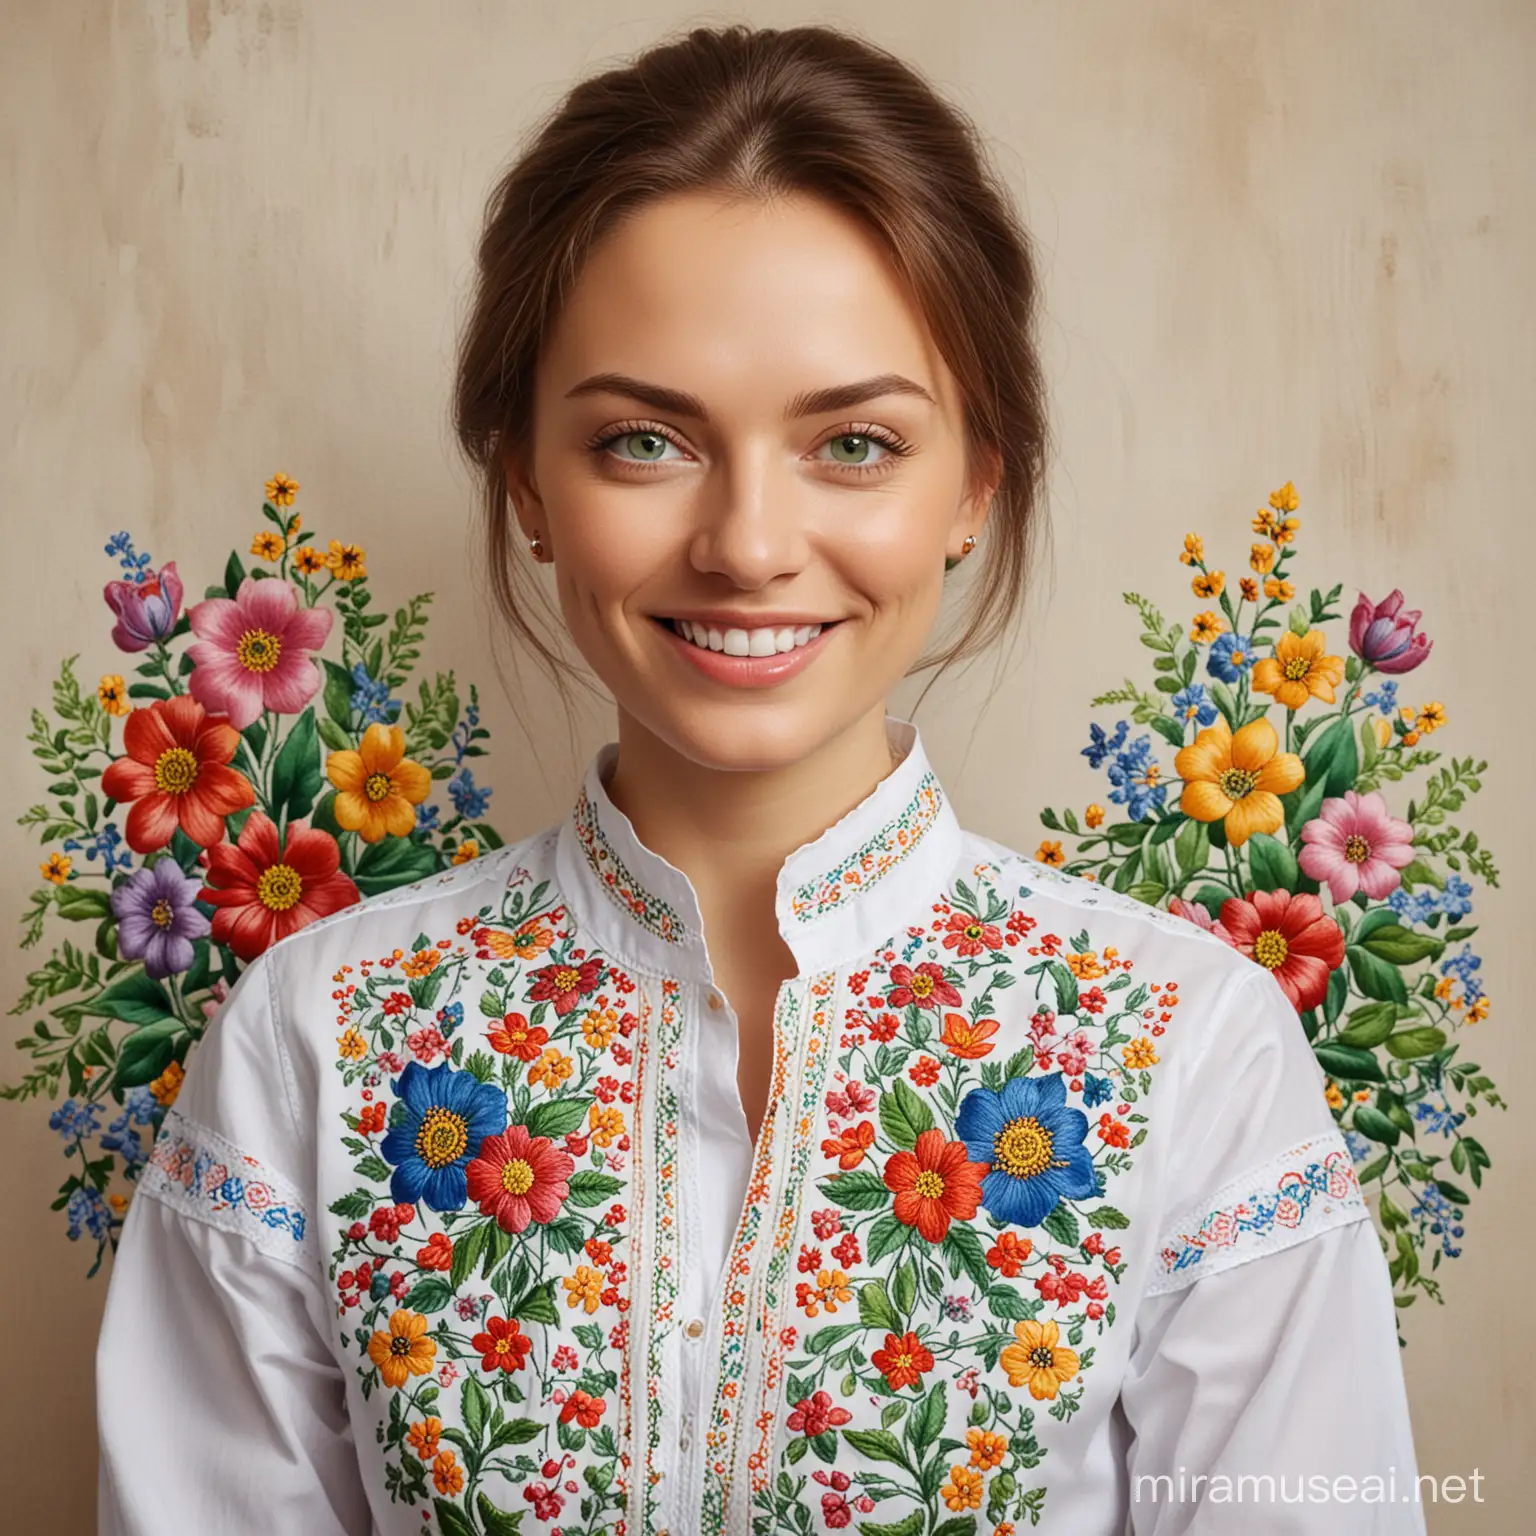 художественная студия, картины, цветы, художник, женщина взрослая, красивая, улыбка, глаза зеленые, вышиванка с украинским орнаментом.